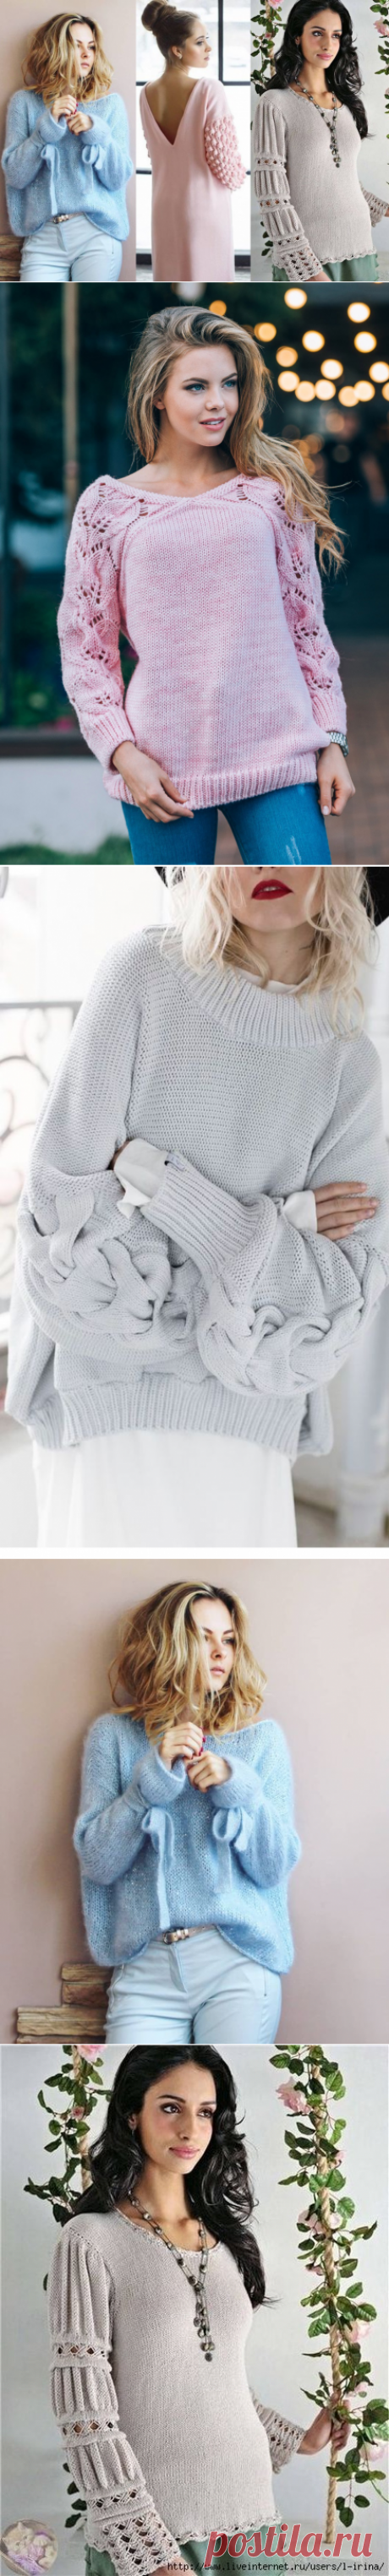 Изюм в рукаве: вязаные свитера с оригинальными рукавами